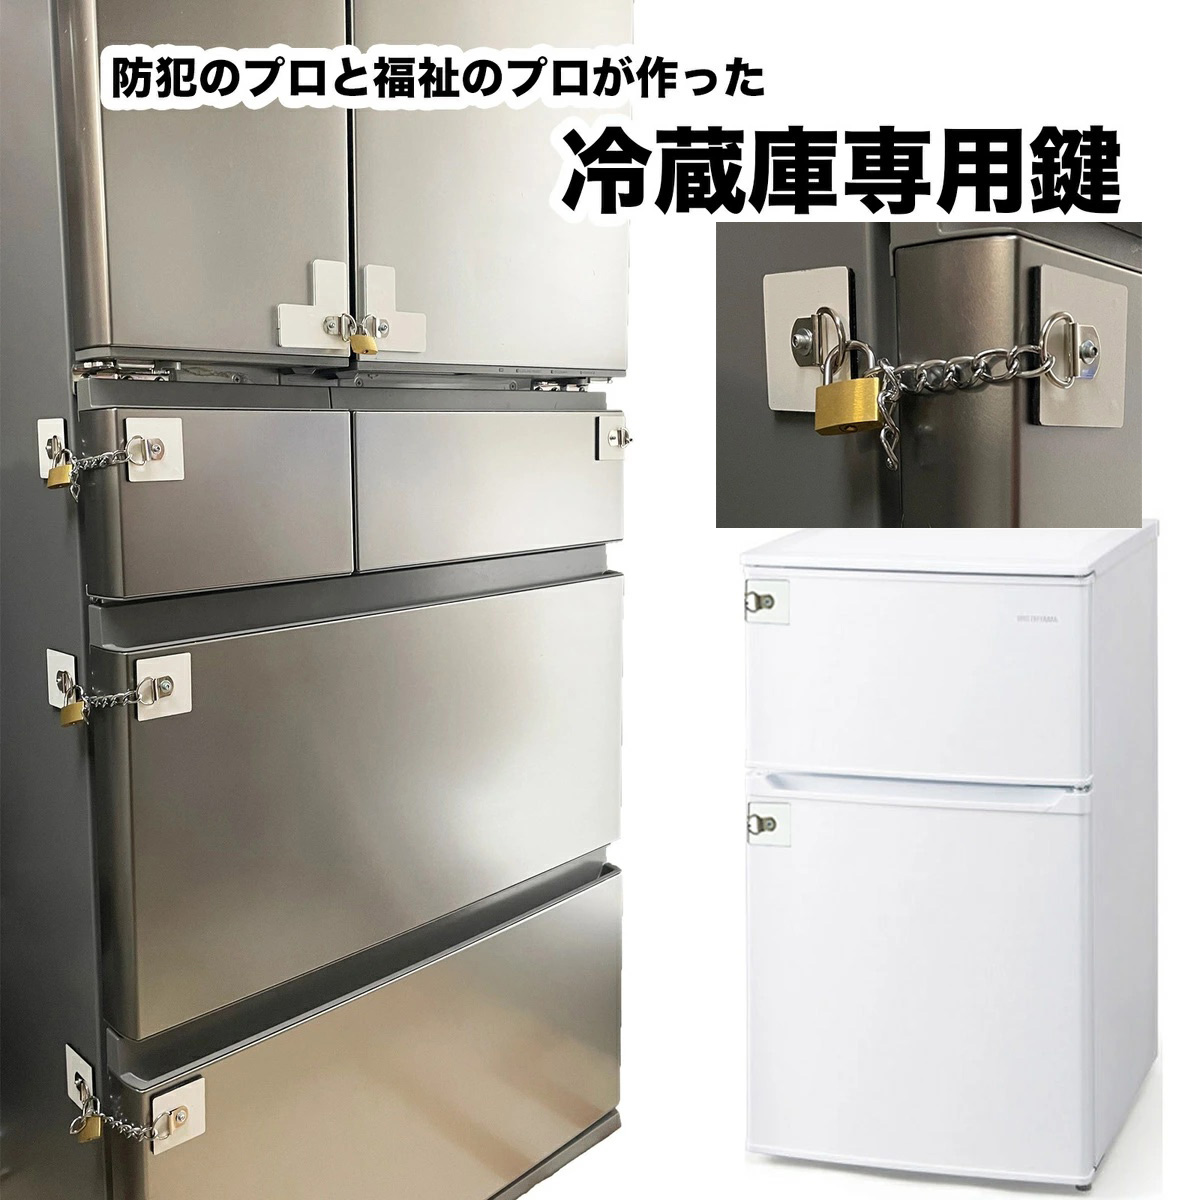 冷蔵庫 赤福様専用 - 冷蔵庫・冷凍庫